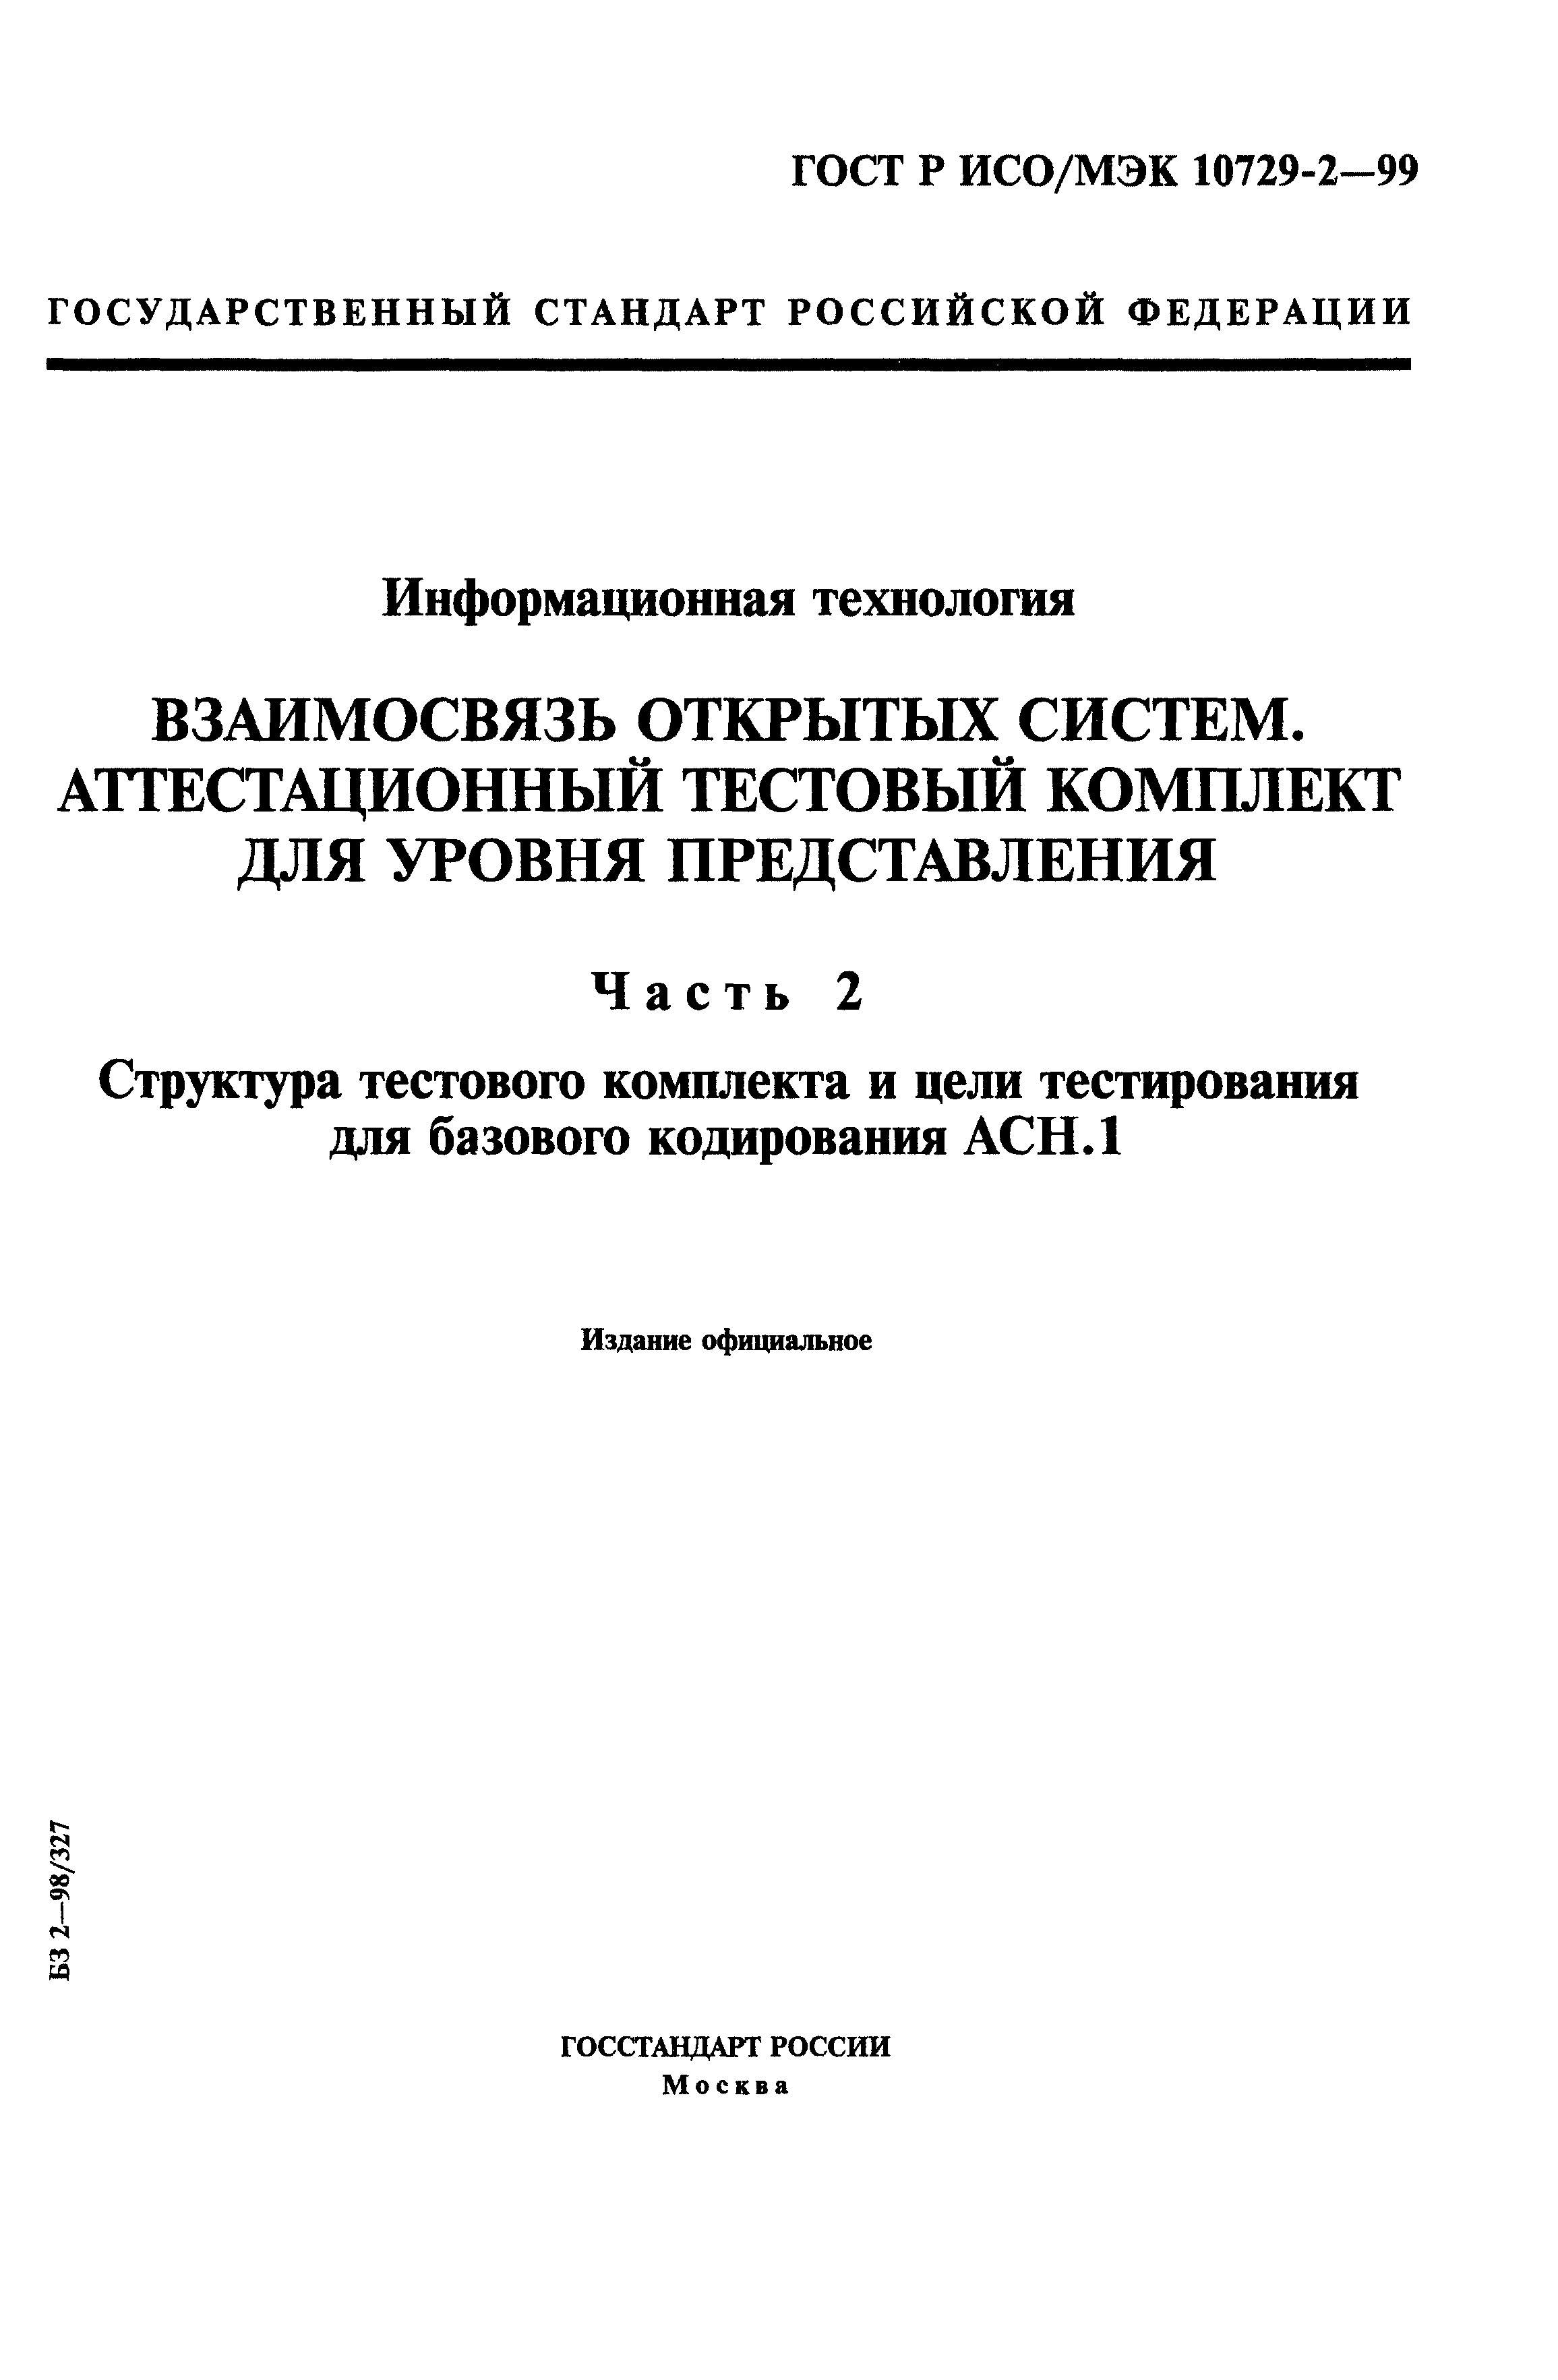 ГОСТ Р ИСО/МЭК 10729-2-99